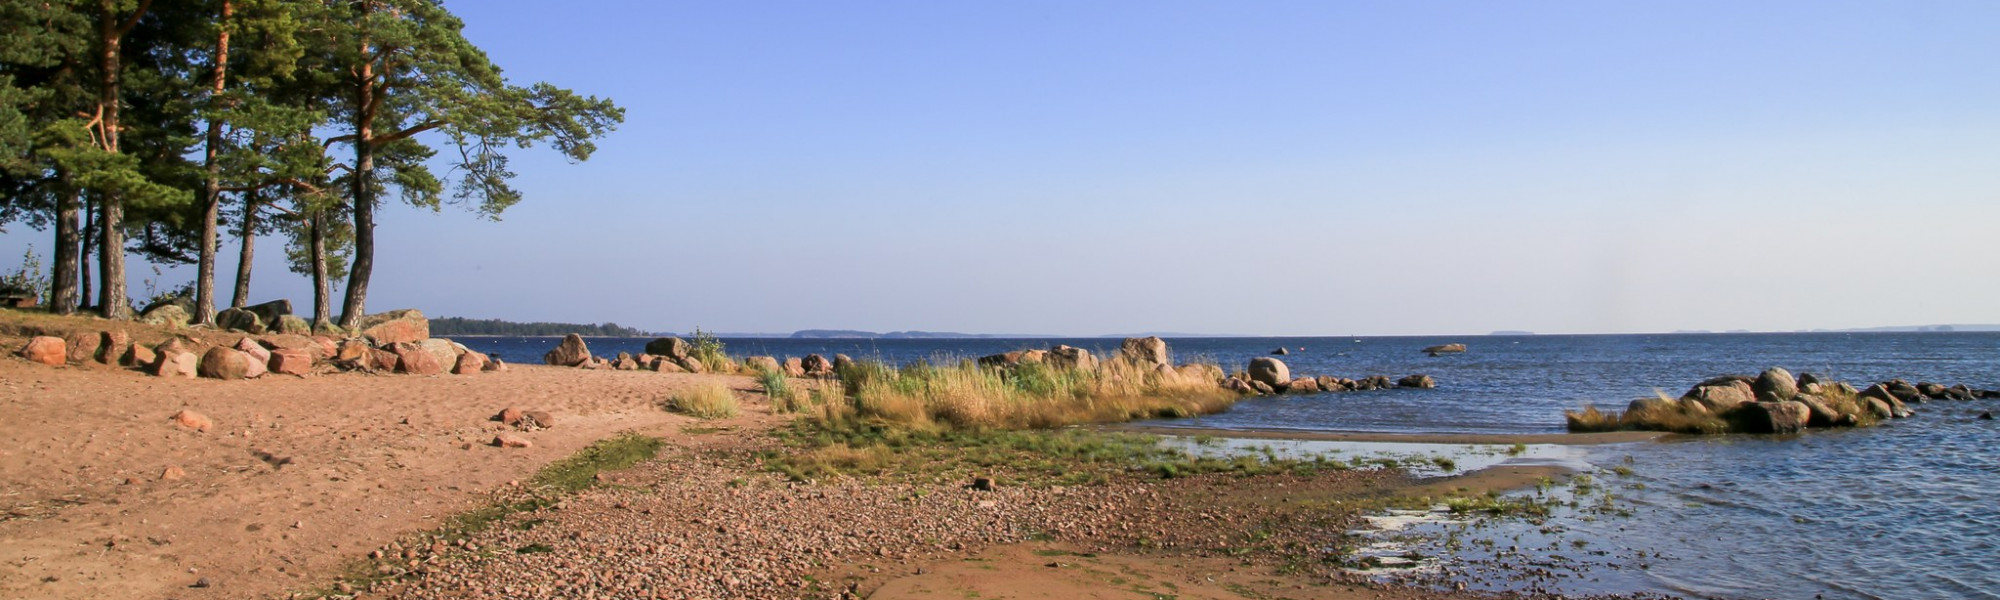 Äijänniemen uimaranta, jossa hiekkainen uimaranta